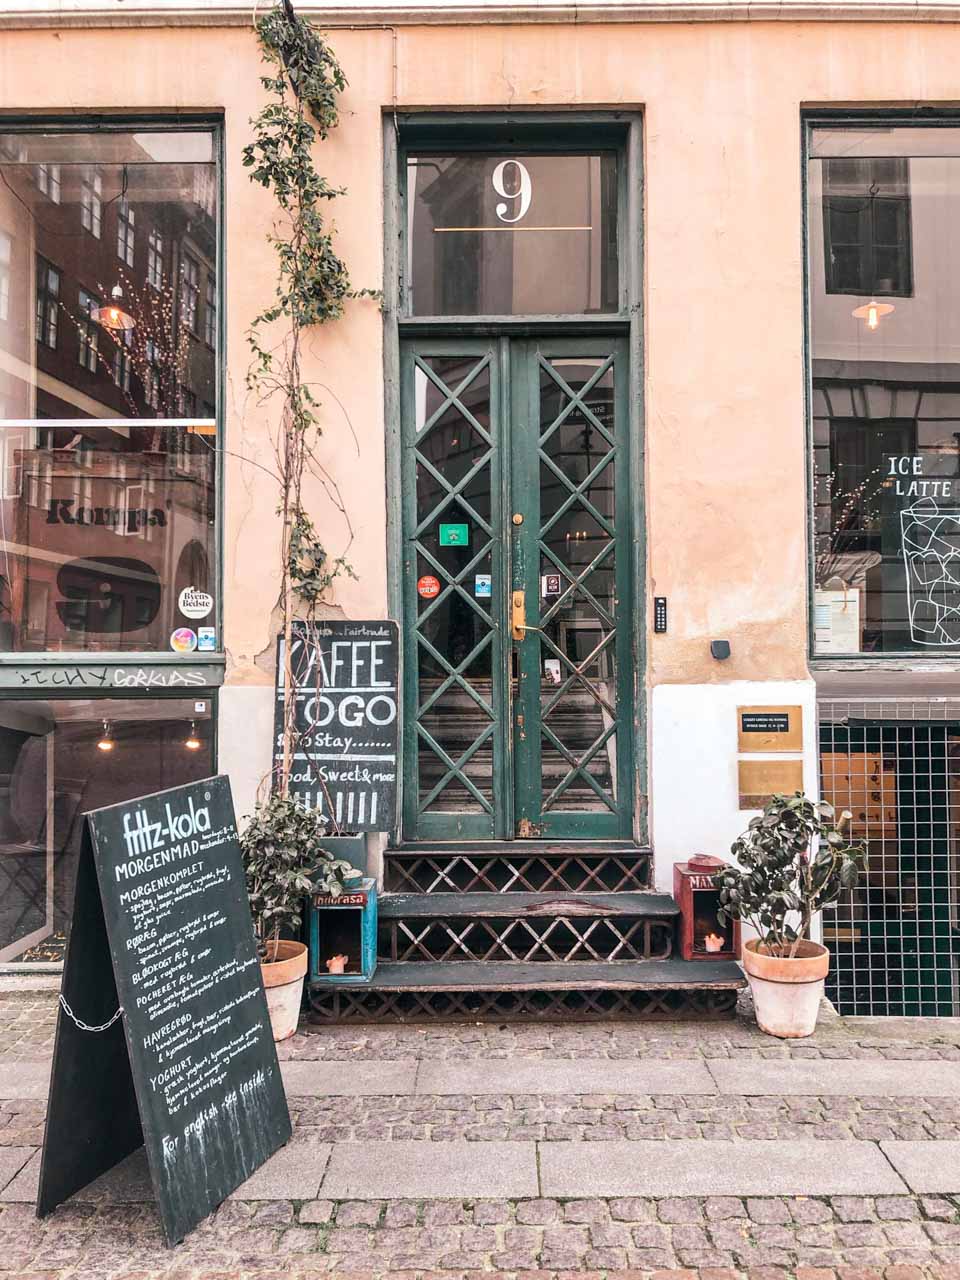 The entrance to a café in Copenhagen, Denmark